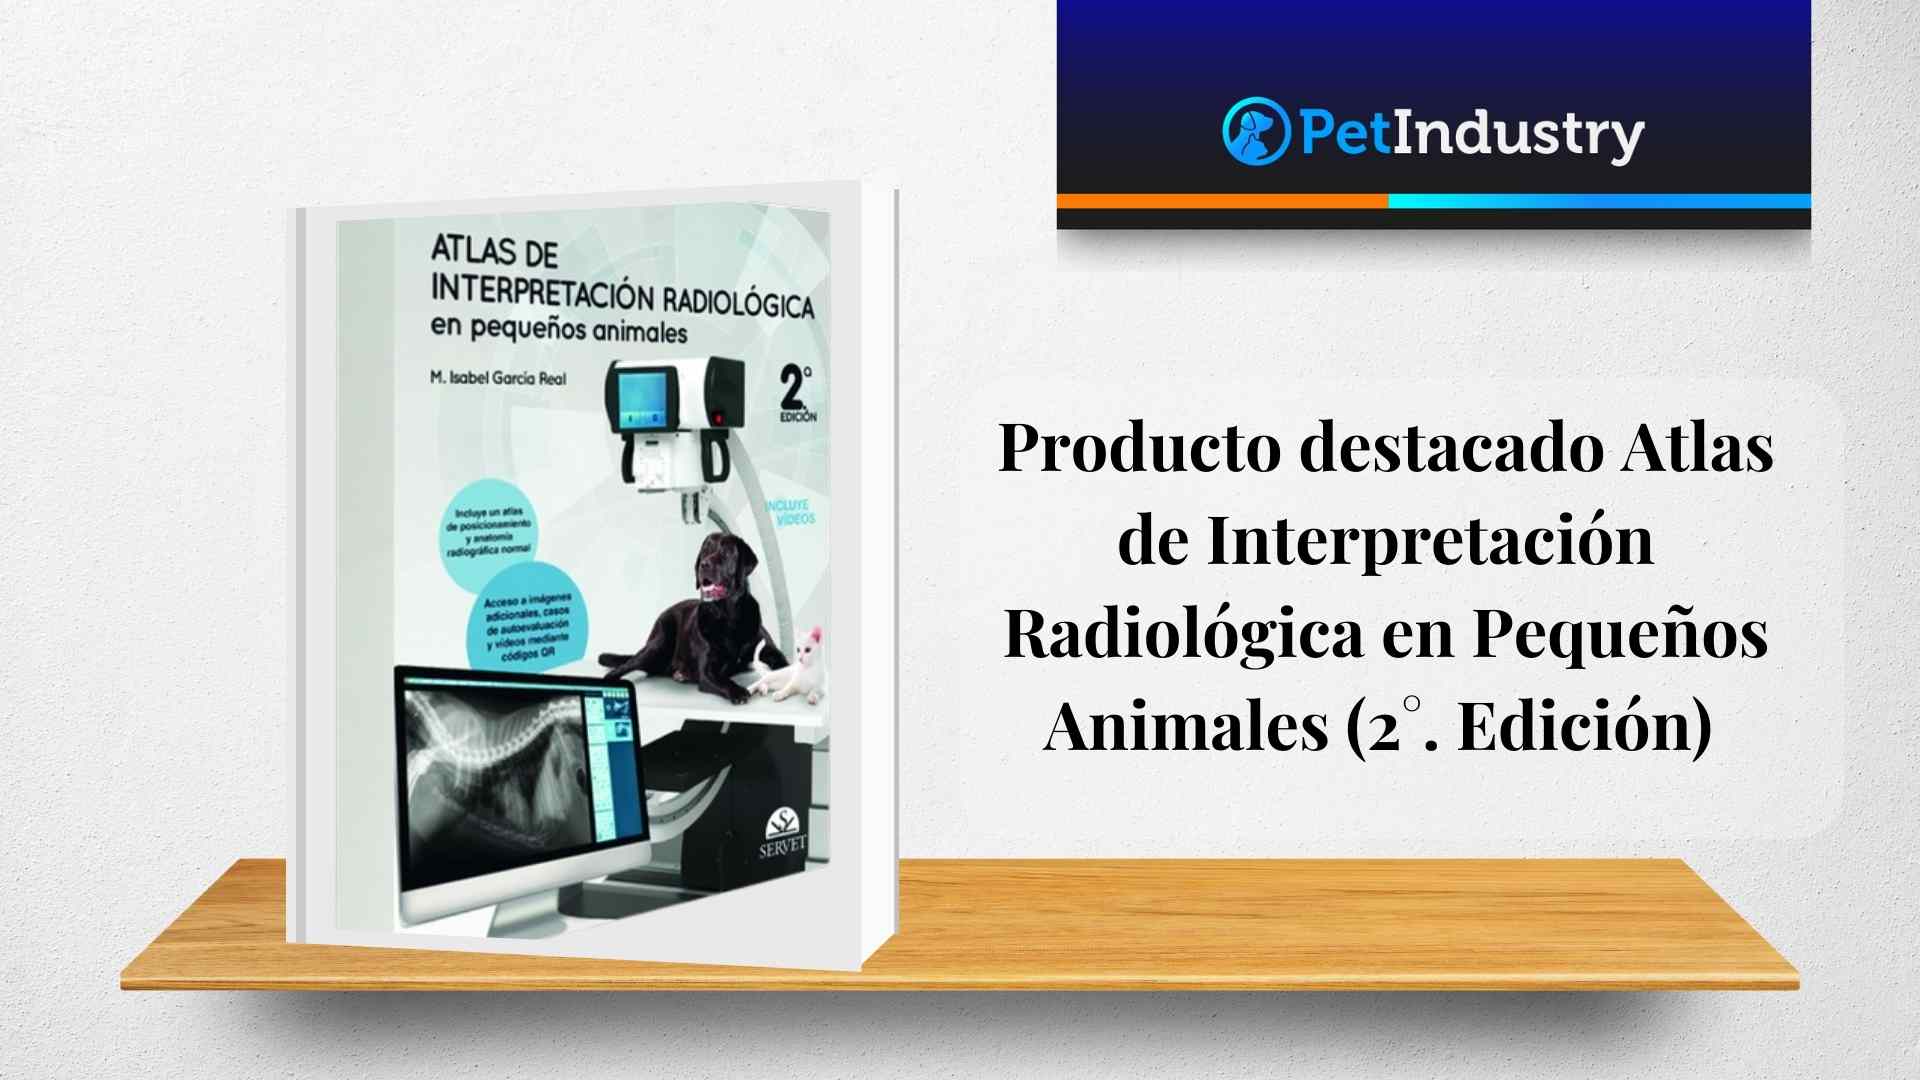 Producto destacado Atlas de Interpretación Radiológica en Pequeños Animales (2°. Edición)